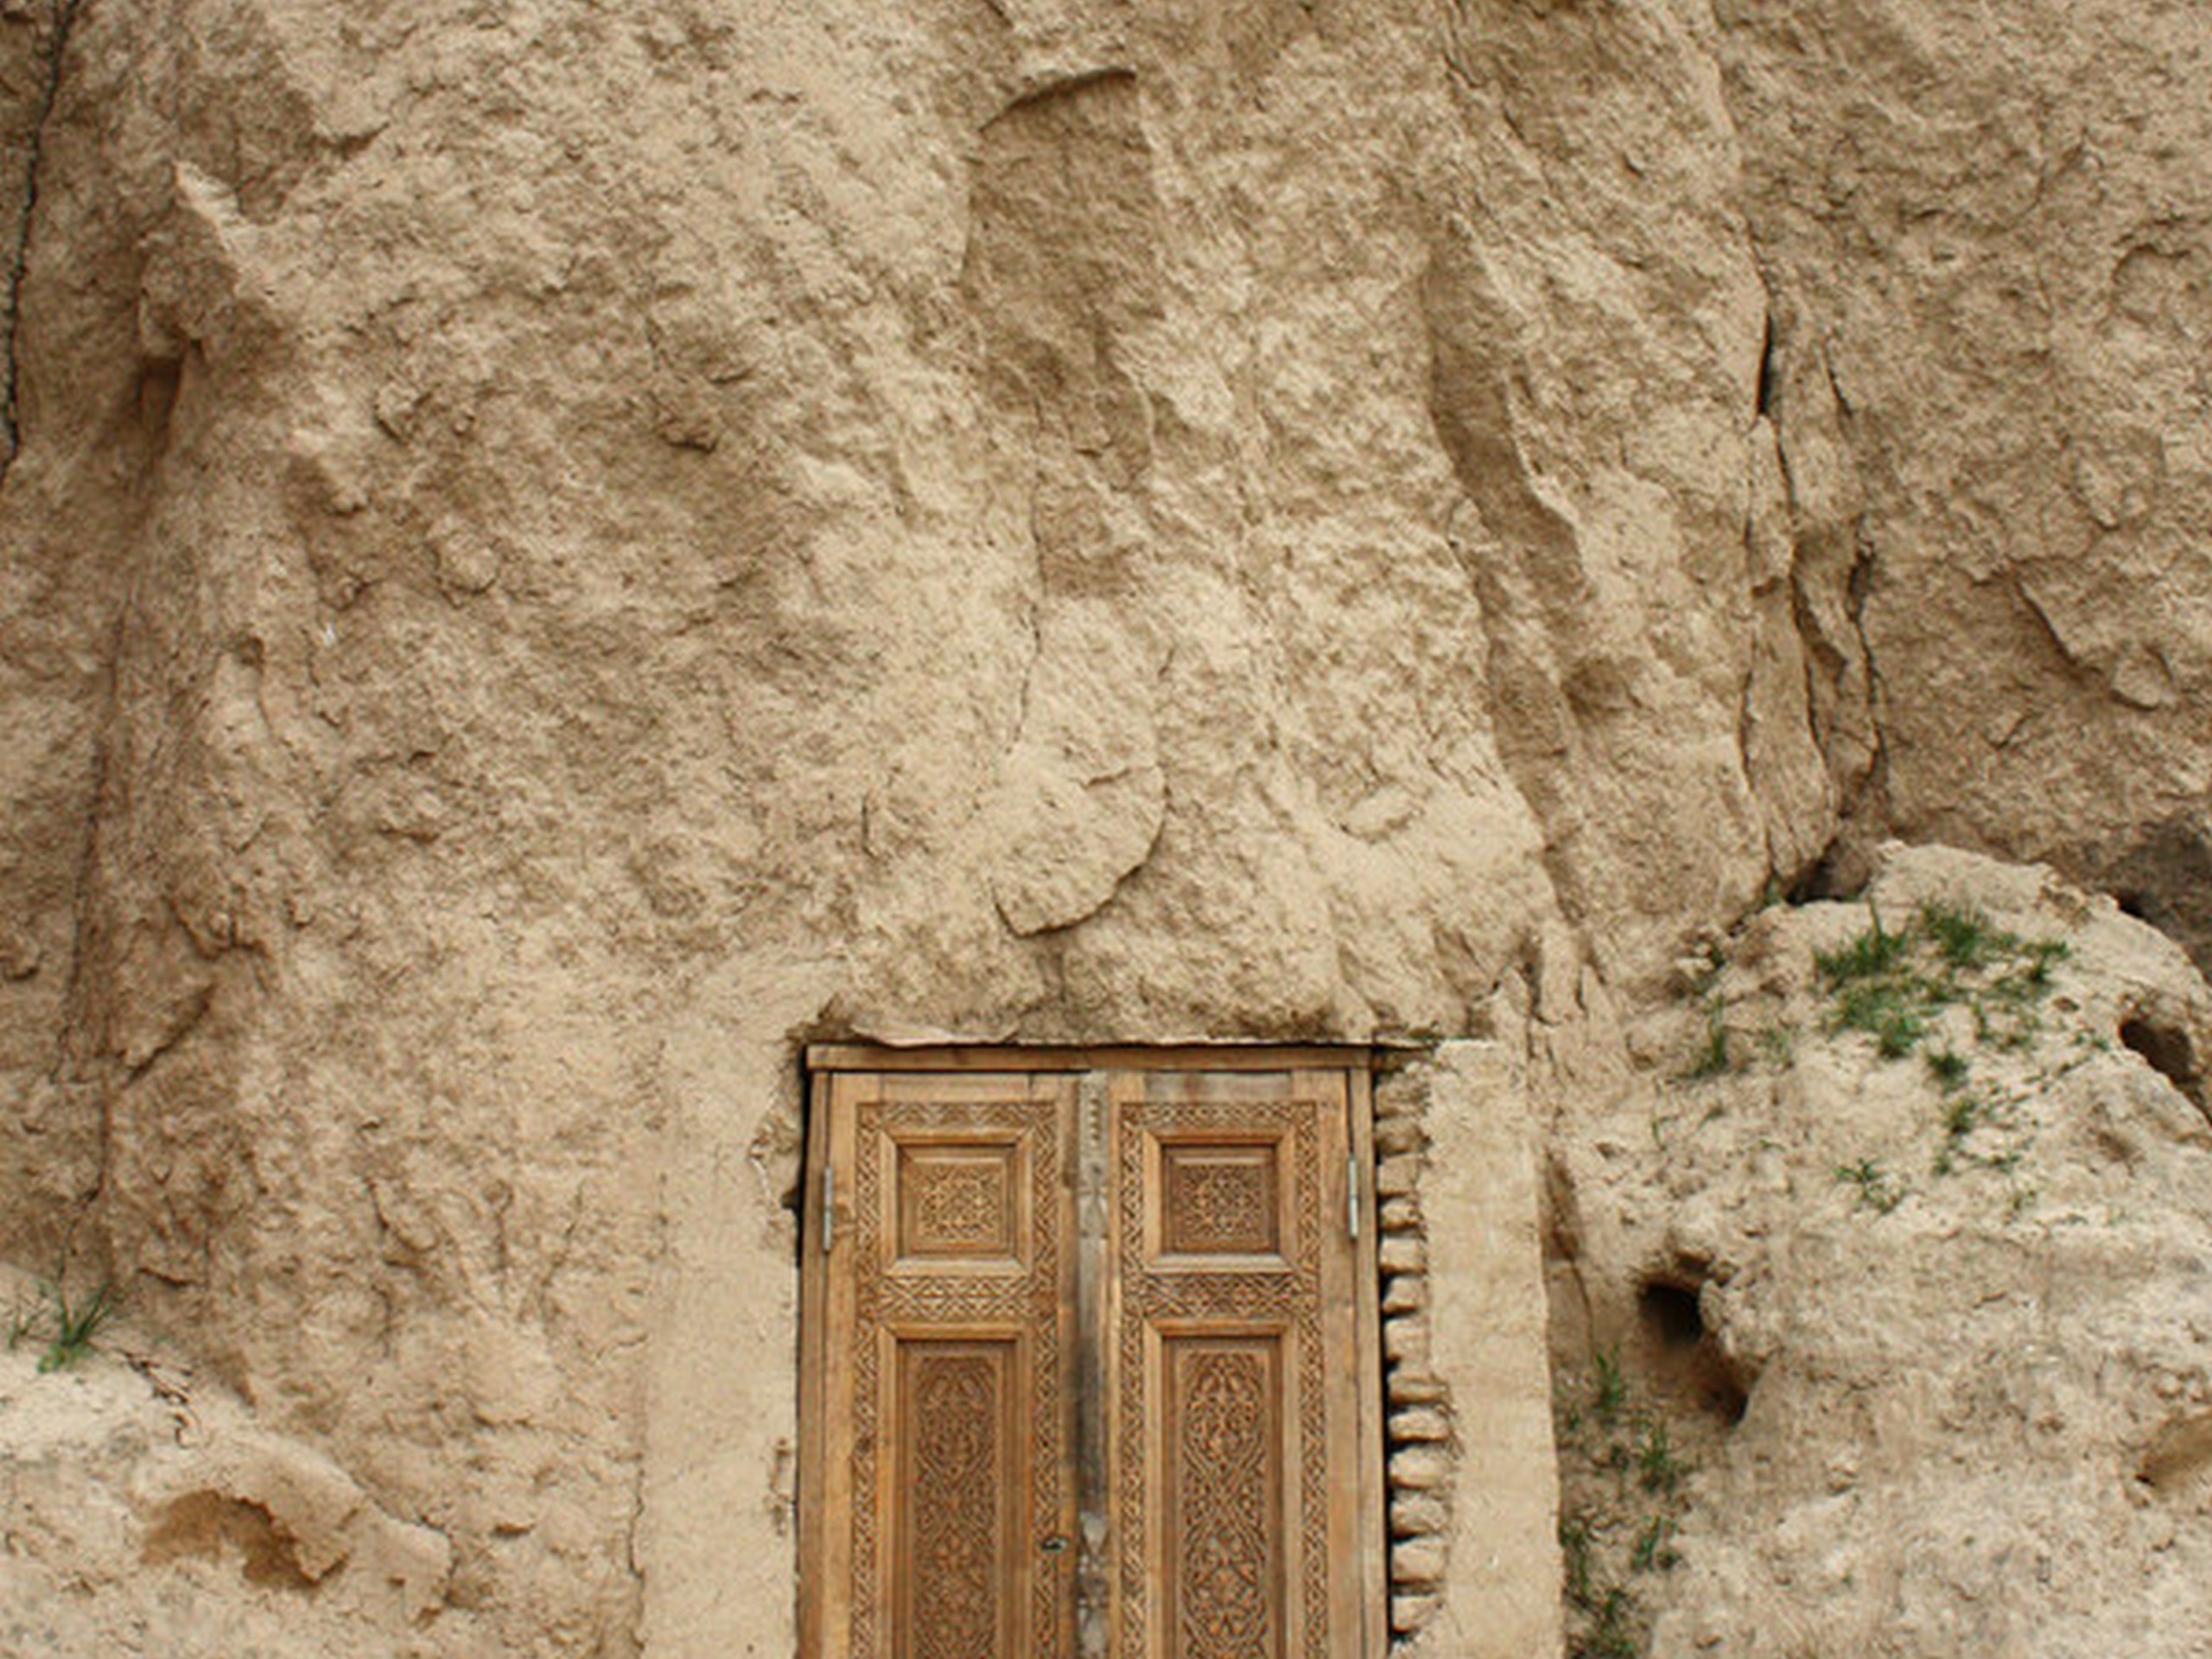 a door in ruins